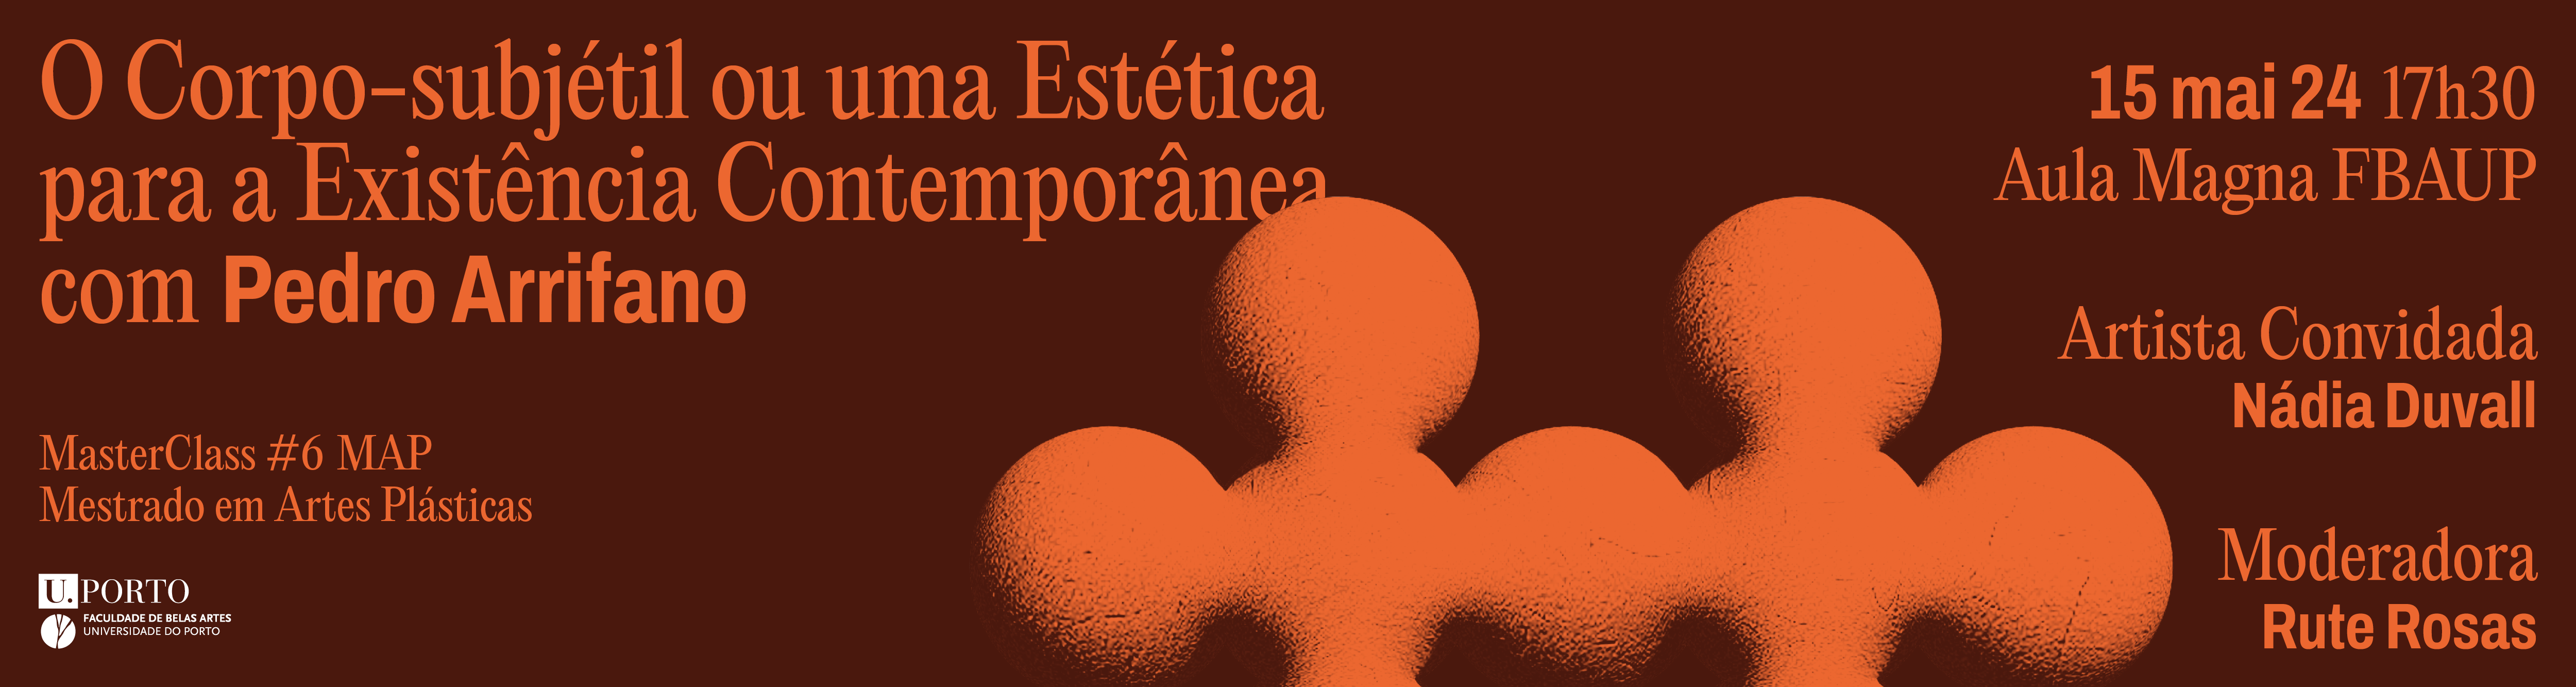 Masterclass #6 MAP | 'O Corpo-subjtil ou uma Esttica para a Existncia Contempornea', com Pedro Arrifano